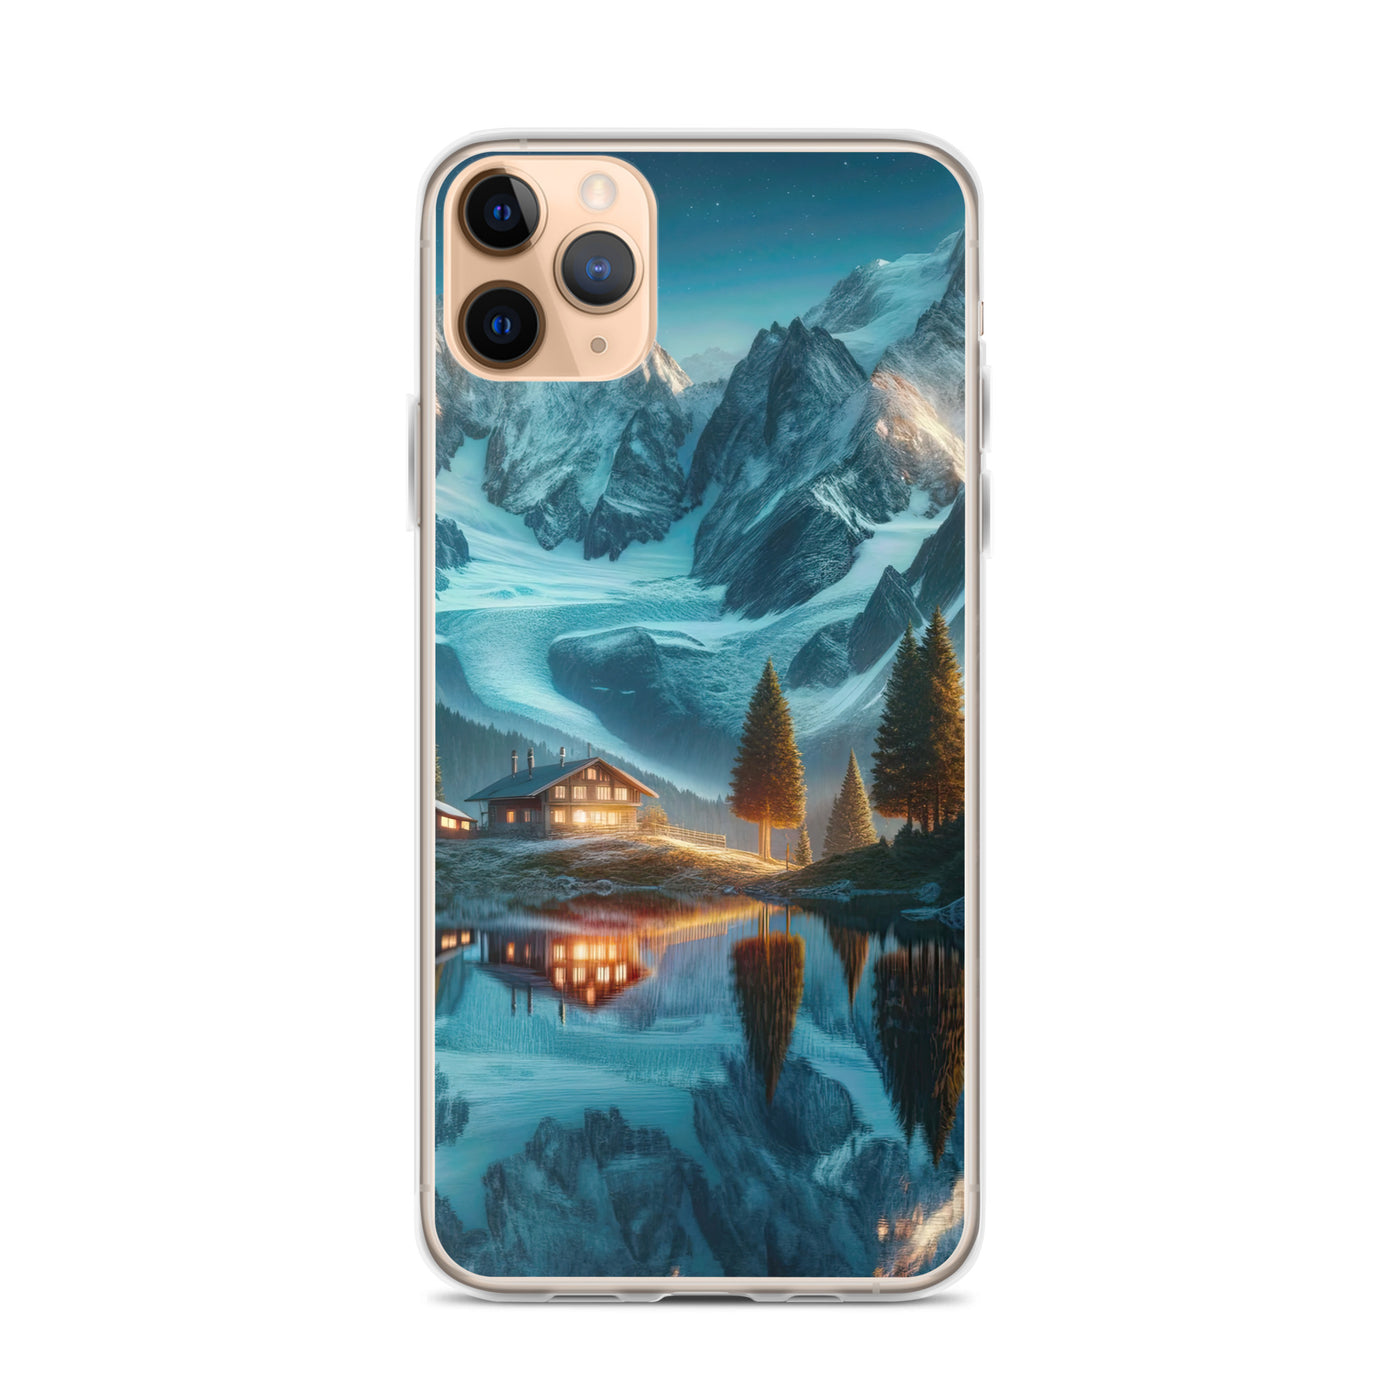 Stille Alpenmajestätik: Digitale Kunst mit Schnee und Bergsee-Spiegelung - iPhone Schutzhülle (durchsichtig) berge xxx yyy zzz iPhone 11 Pro Max